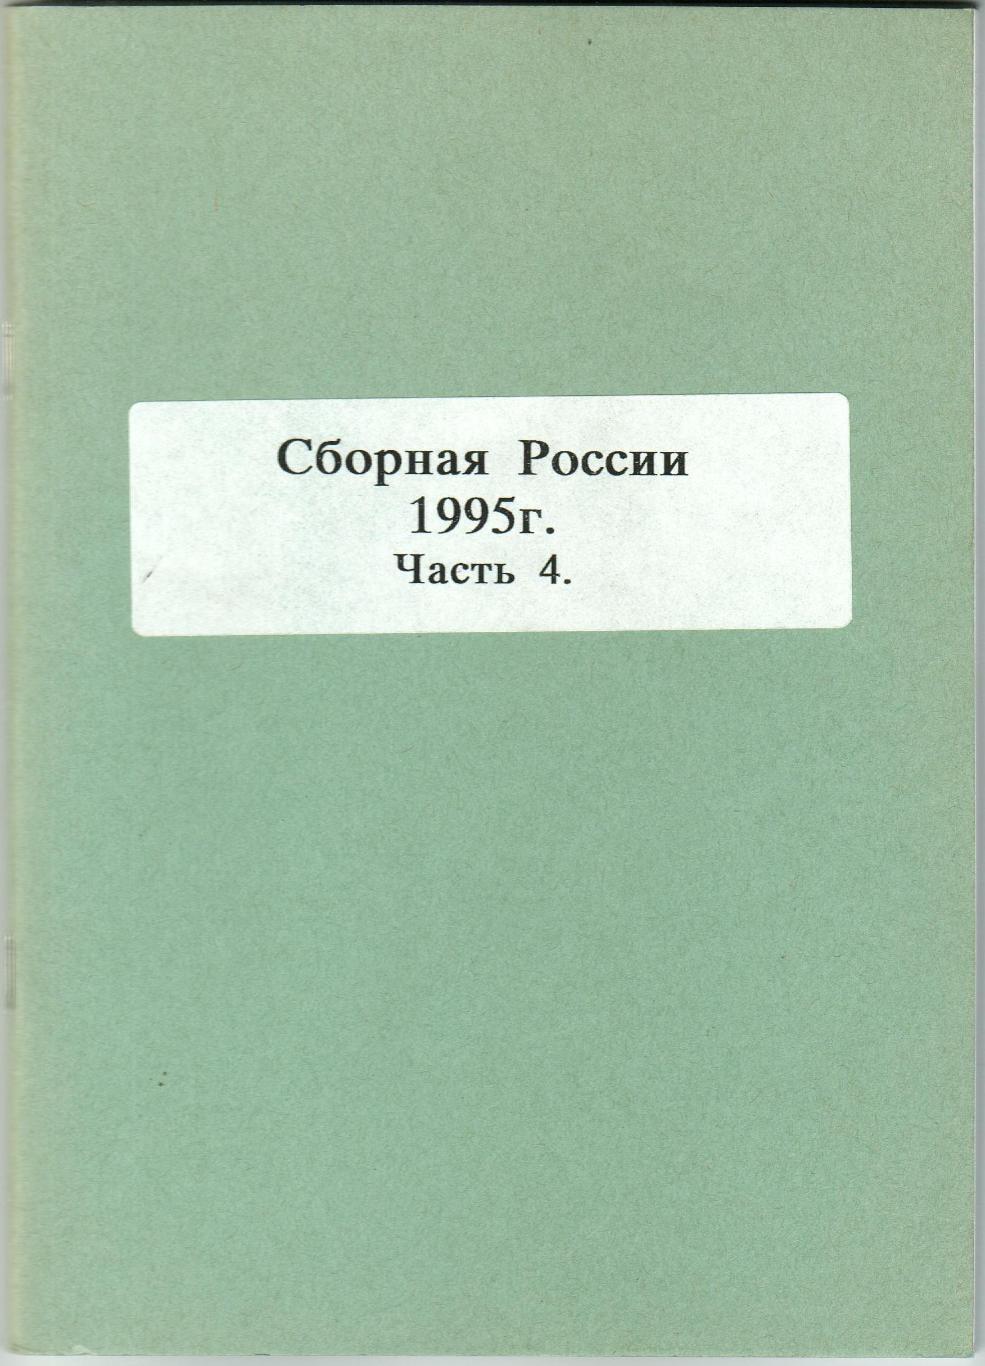 Сборная России по футболу 1995 Часть 4